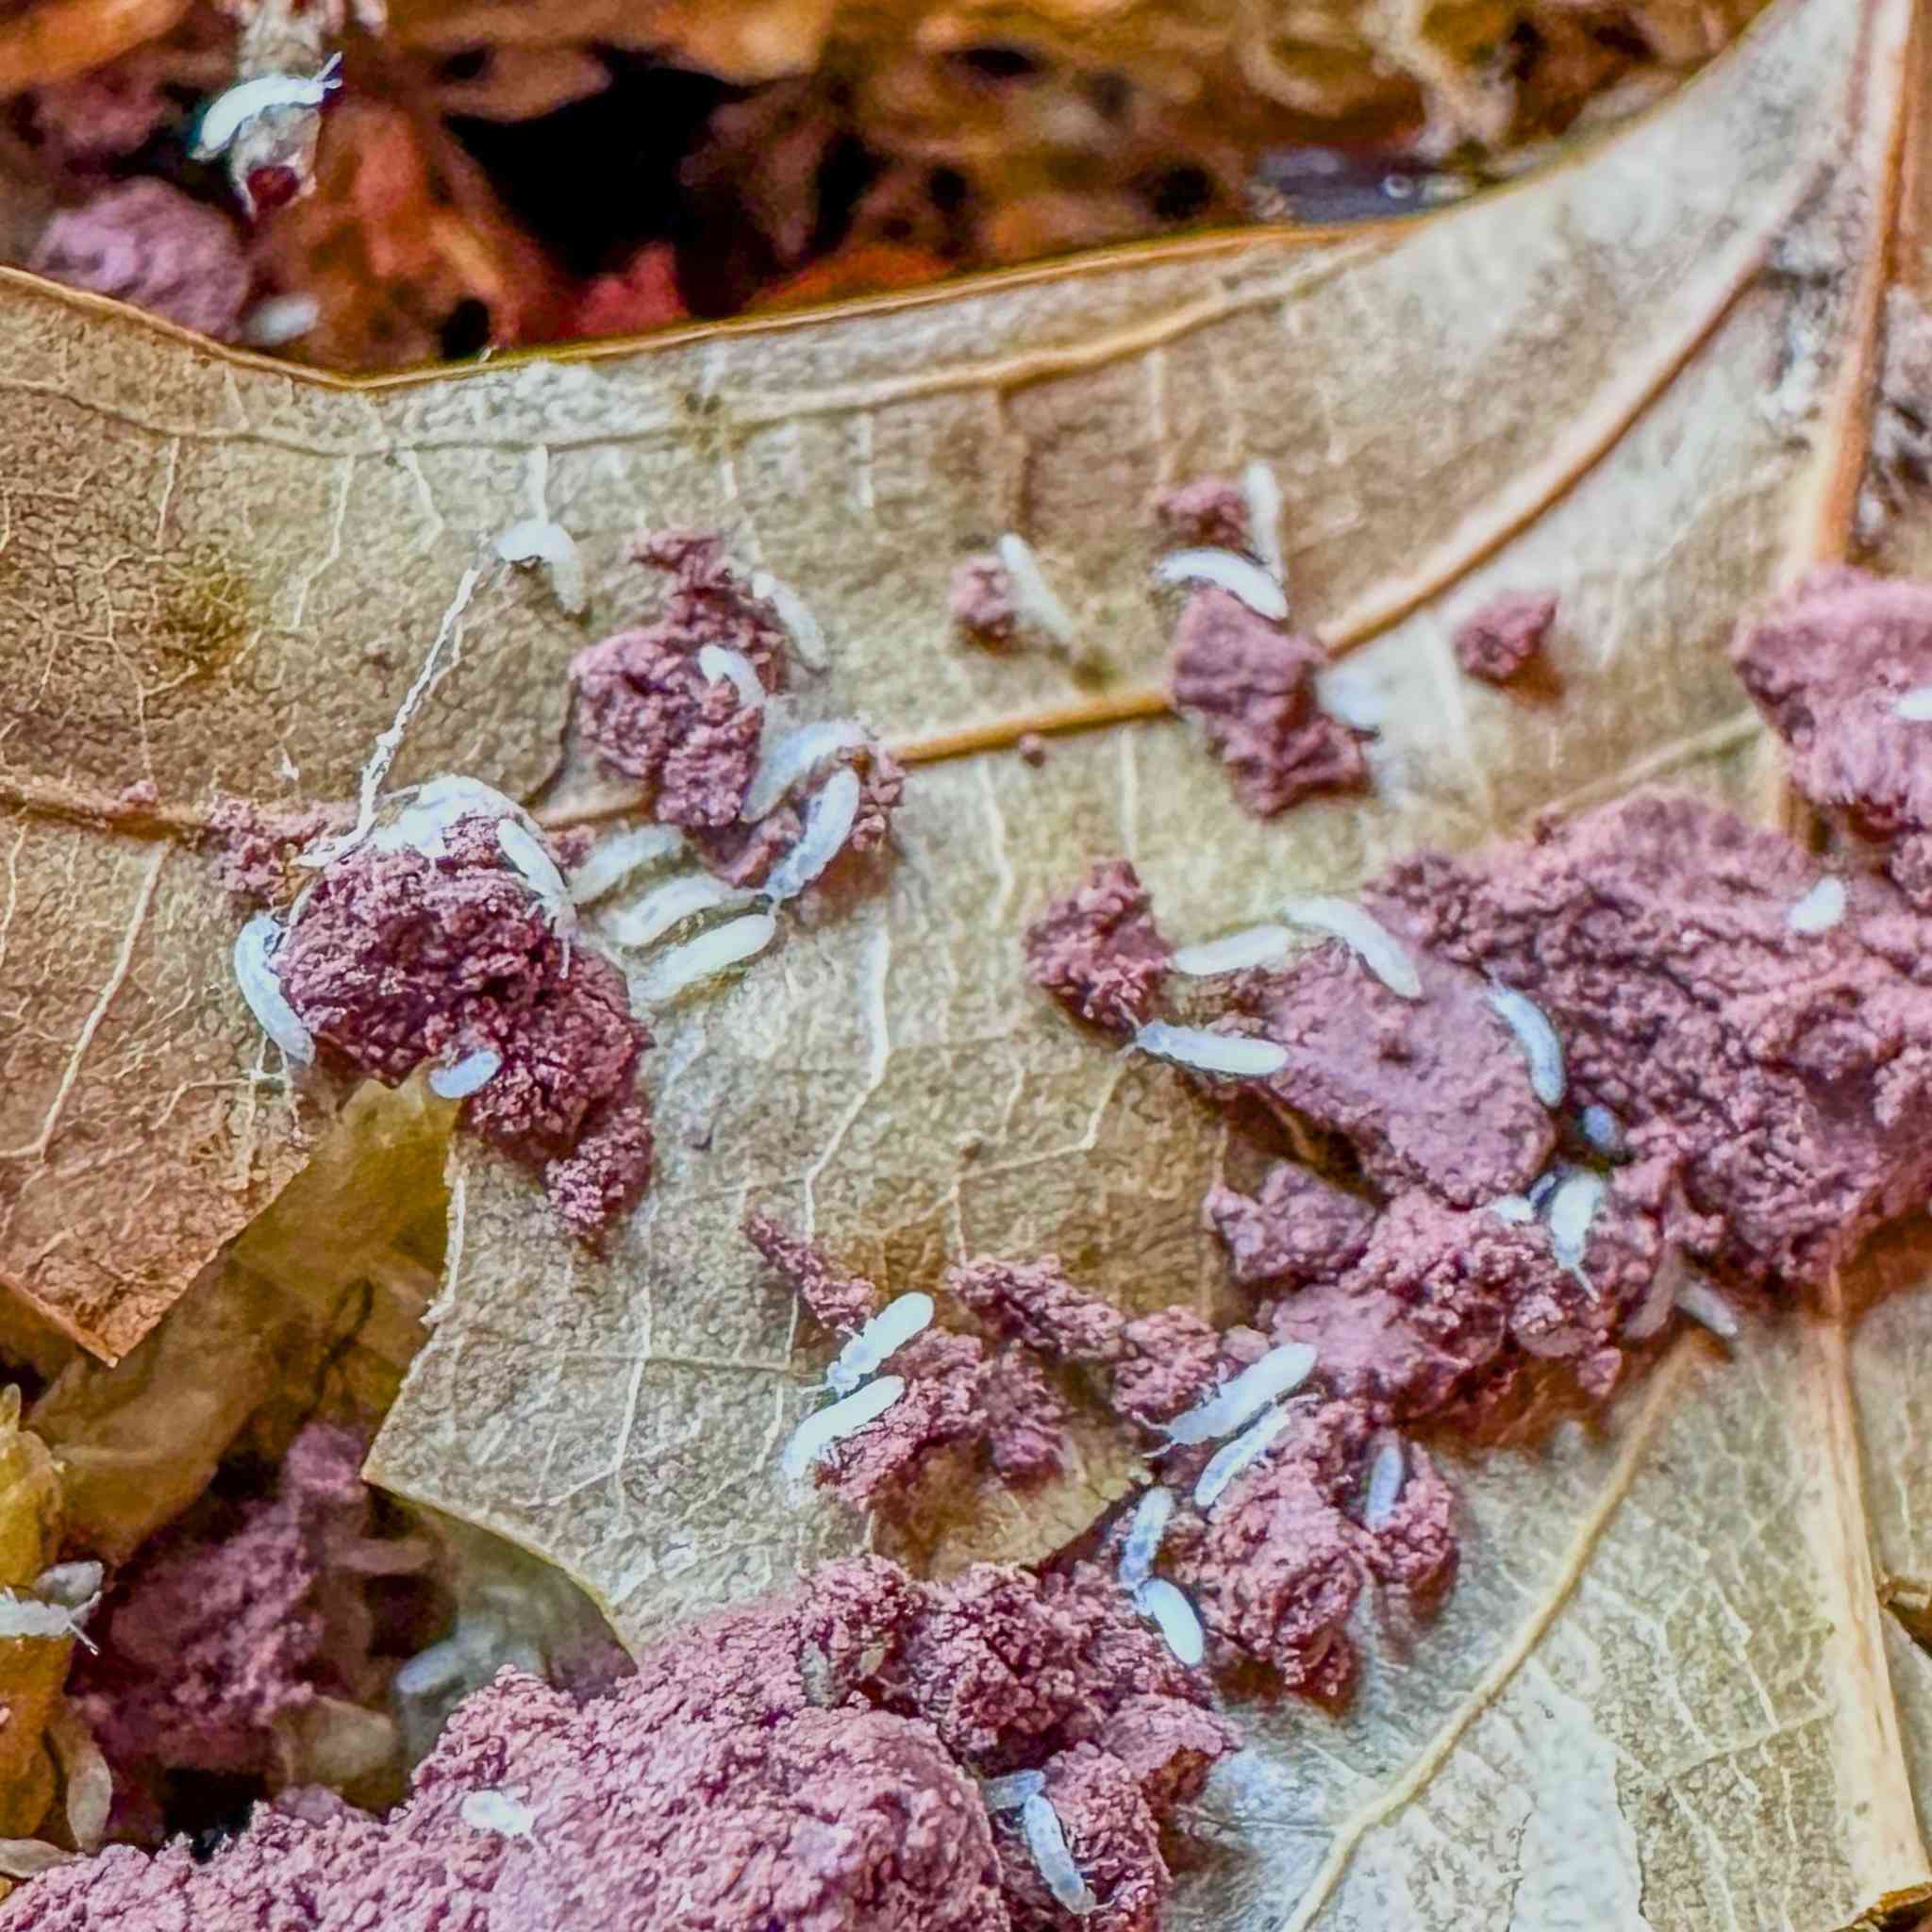 springtails on leaf litter